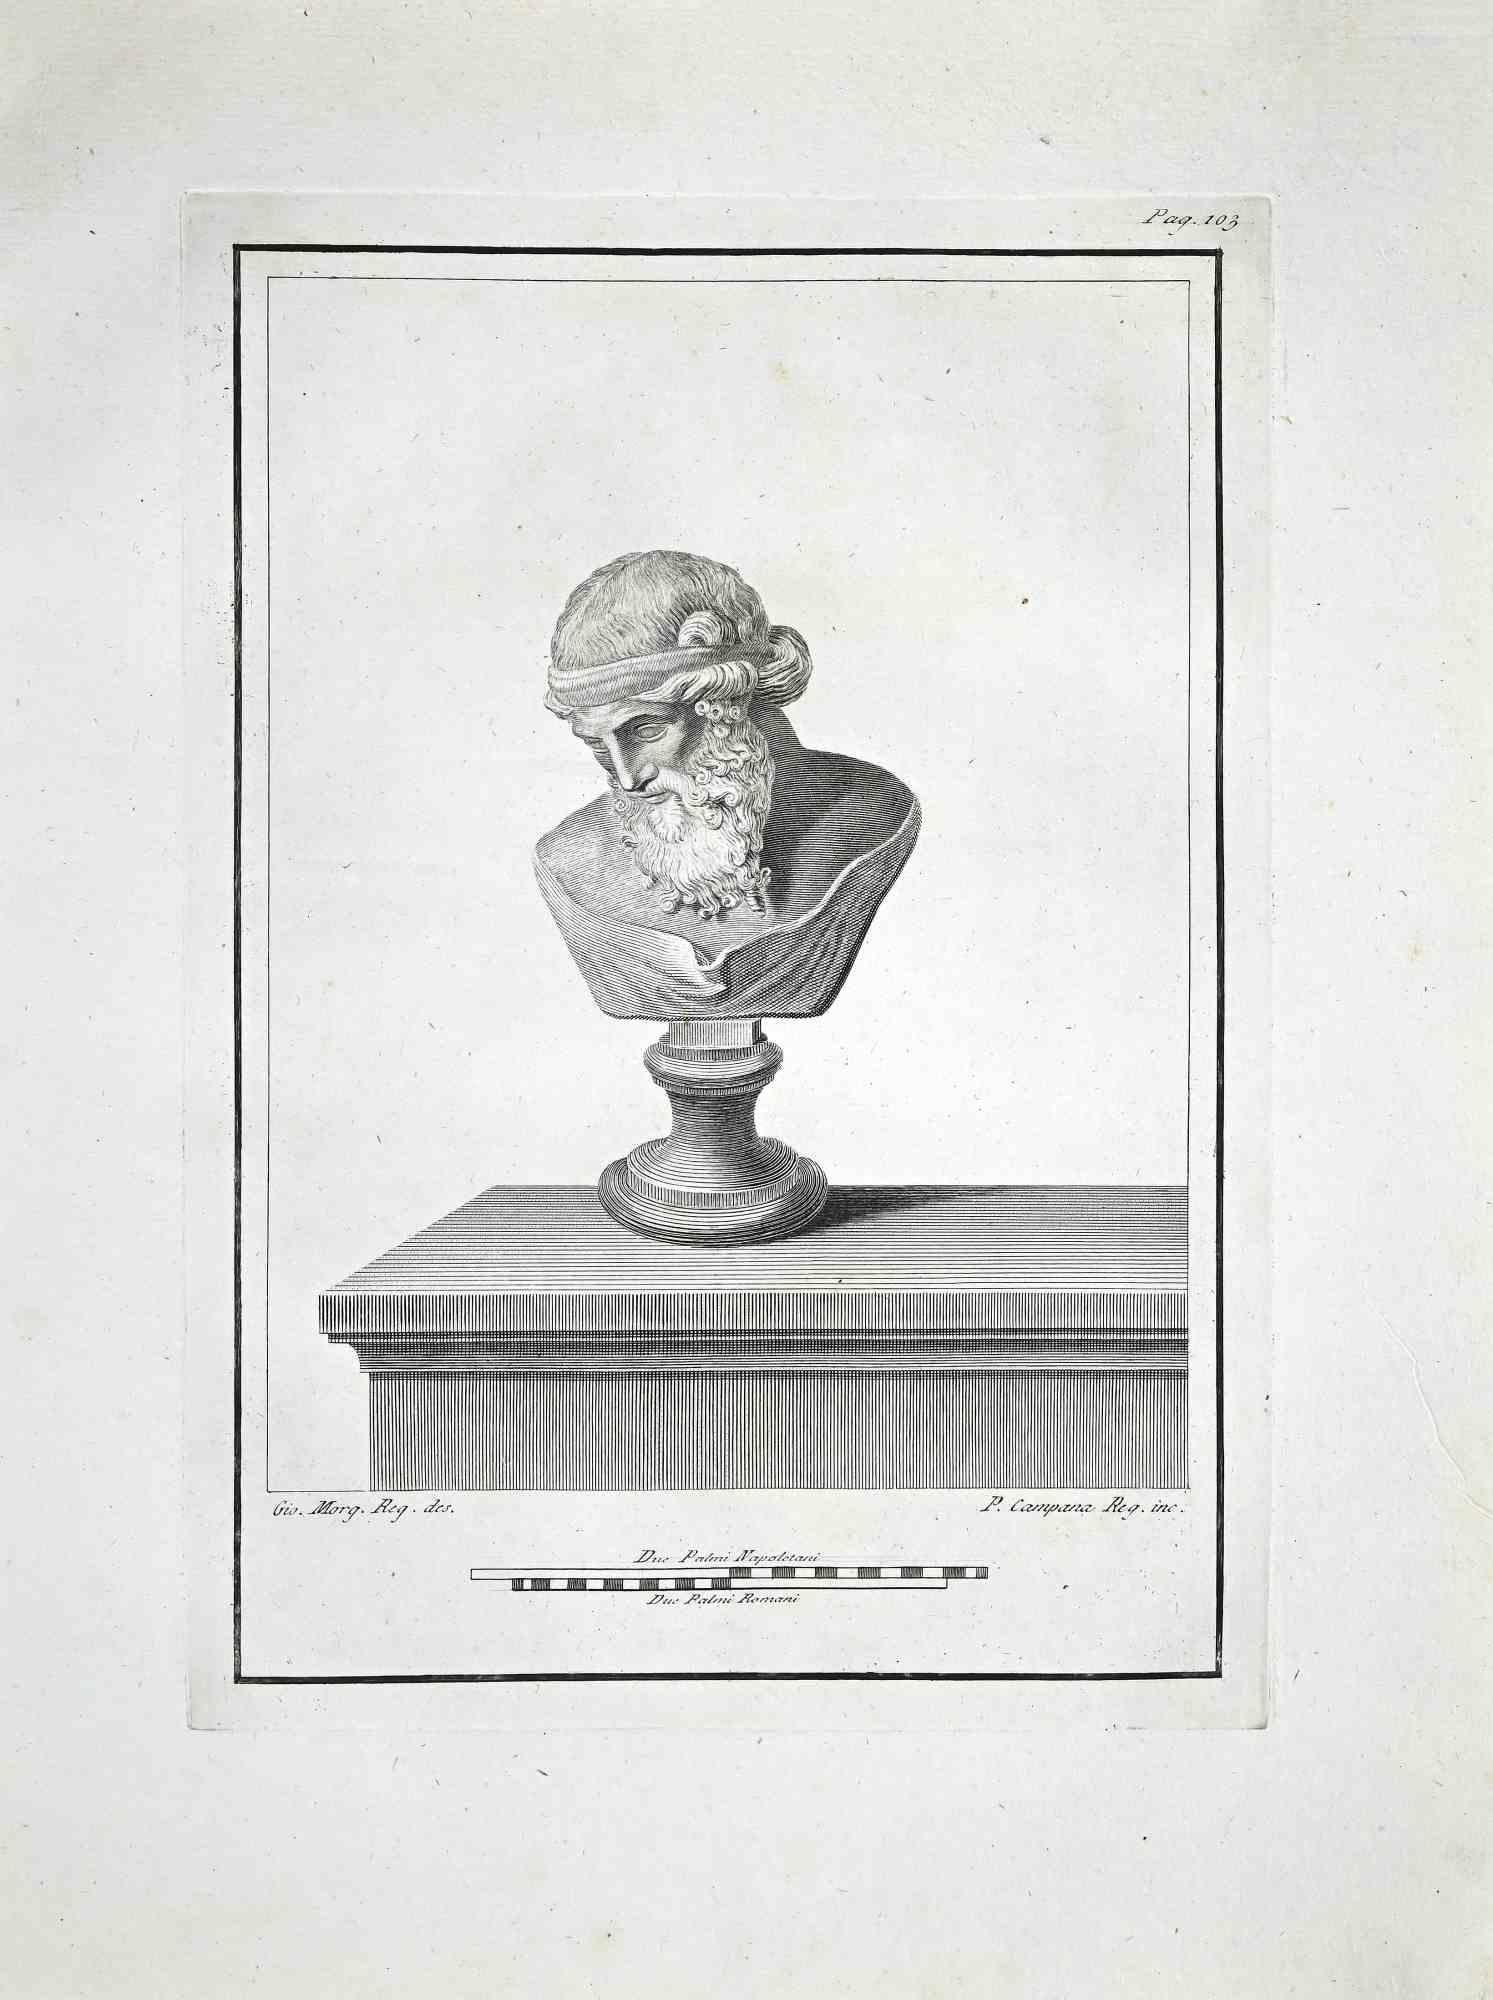 Ancient Roman Bust, aus der Serie "Antiquities of Herculaneum", ist eine Original-Radierung auf Papier von Pietro Campana.

Signiert auf der Platte, unten rechts.

Gute Bedingungen.

Die Radierung gehört zu der Druckserie "Antiquities of Herculaneum